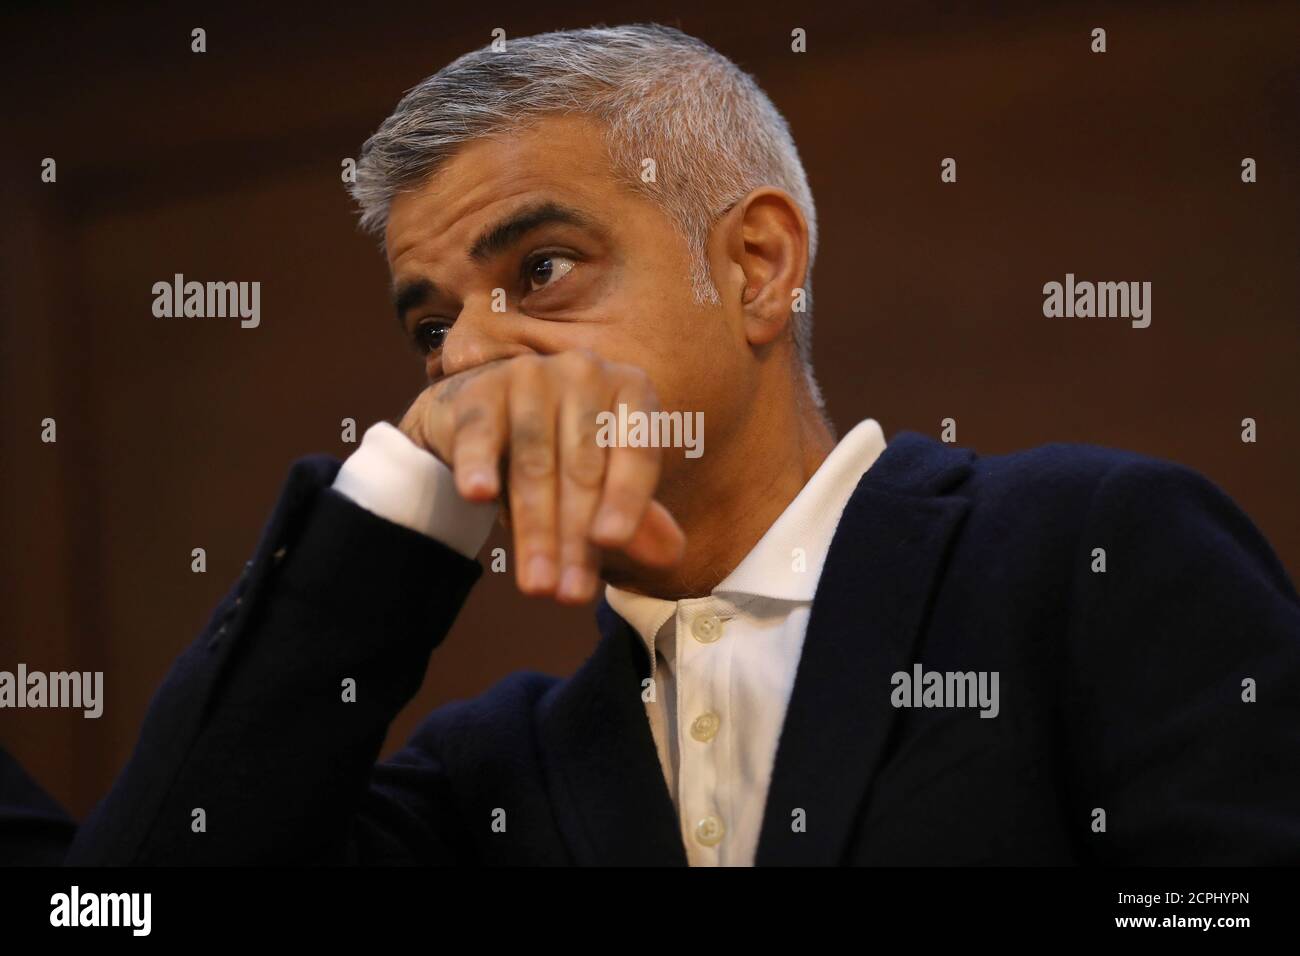 El alcalde de Londres, Sadiq Khan, hace una pausa mientras habla en la Conferencia de año Nuevo de la Sociedad Fabiana, en el centro de Londres, Gran Bretaña, el 13 de enero de 2018. REUTERS/Simon Dawson Foto de stock